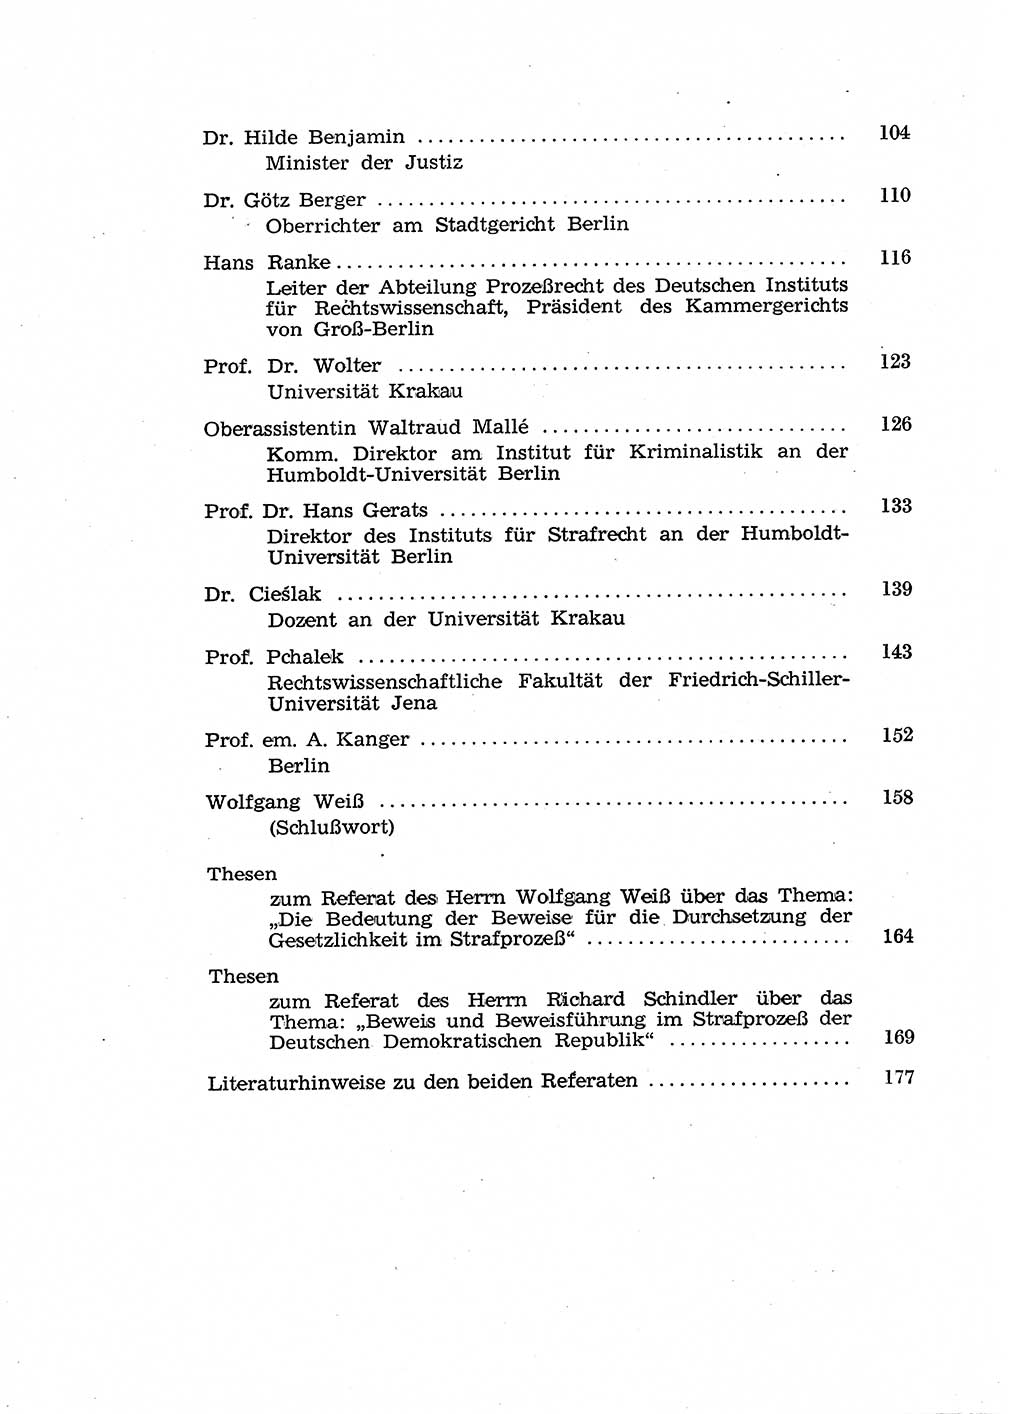 Fragen des Beweisrechts im Strafprozess [Deutsche Demokratische Republik (DDR)] 1956, Seite 180 (Fr. BeweisR. Str.-Proz. DDR 1956, S. 180)